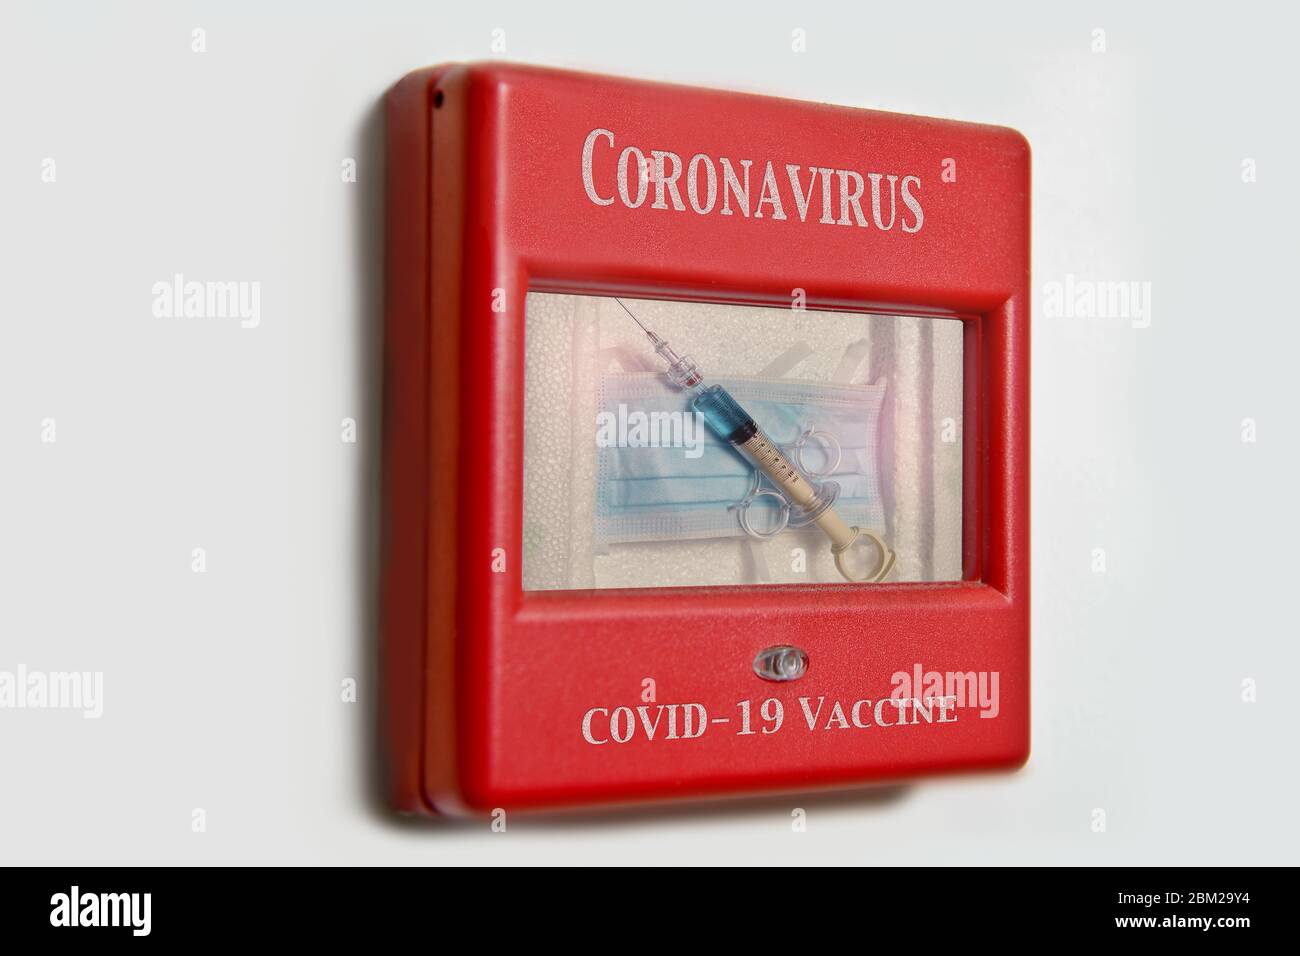 Immagine concettuale di una siringa e maschera facciale contenuta in un allarme di emergenza da utilizzare con problemi di Covid-19 e Coronavirus. Foto Stock